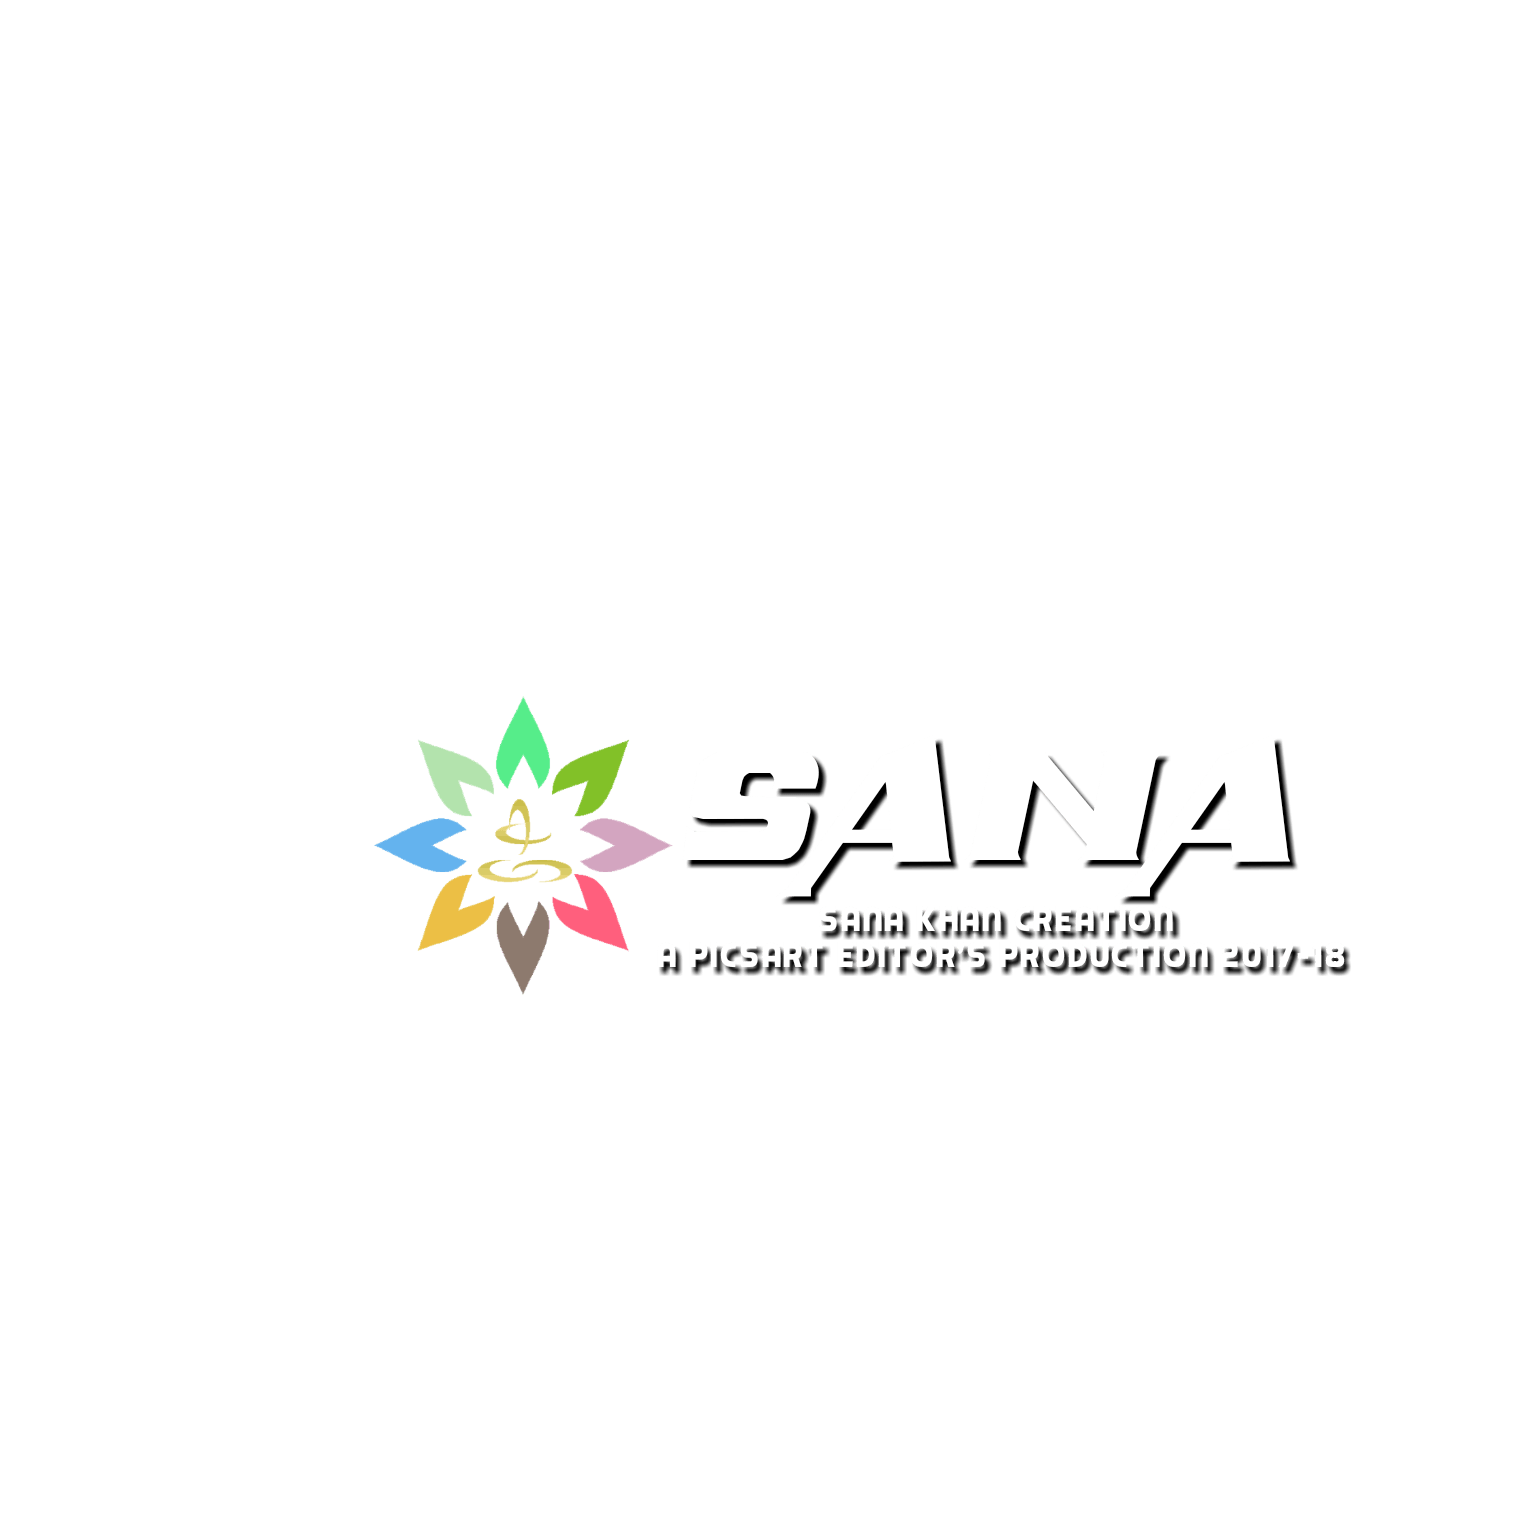 Sana Logo - SANA KHAN ur requested logos